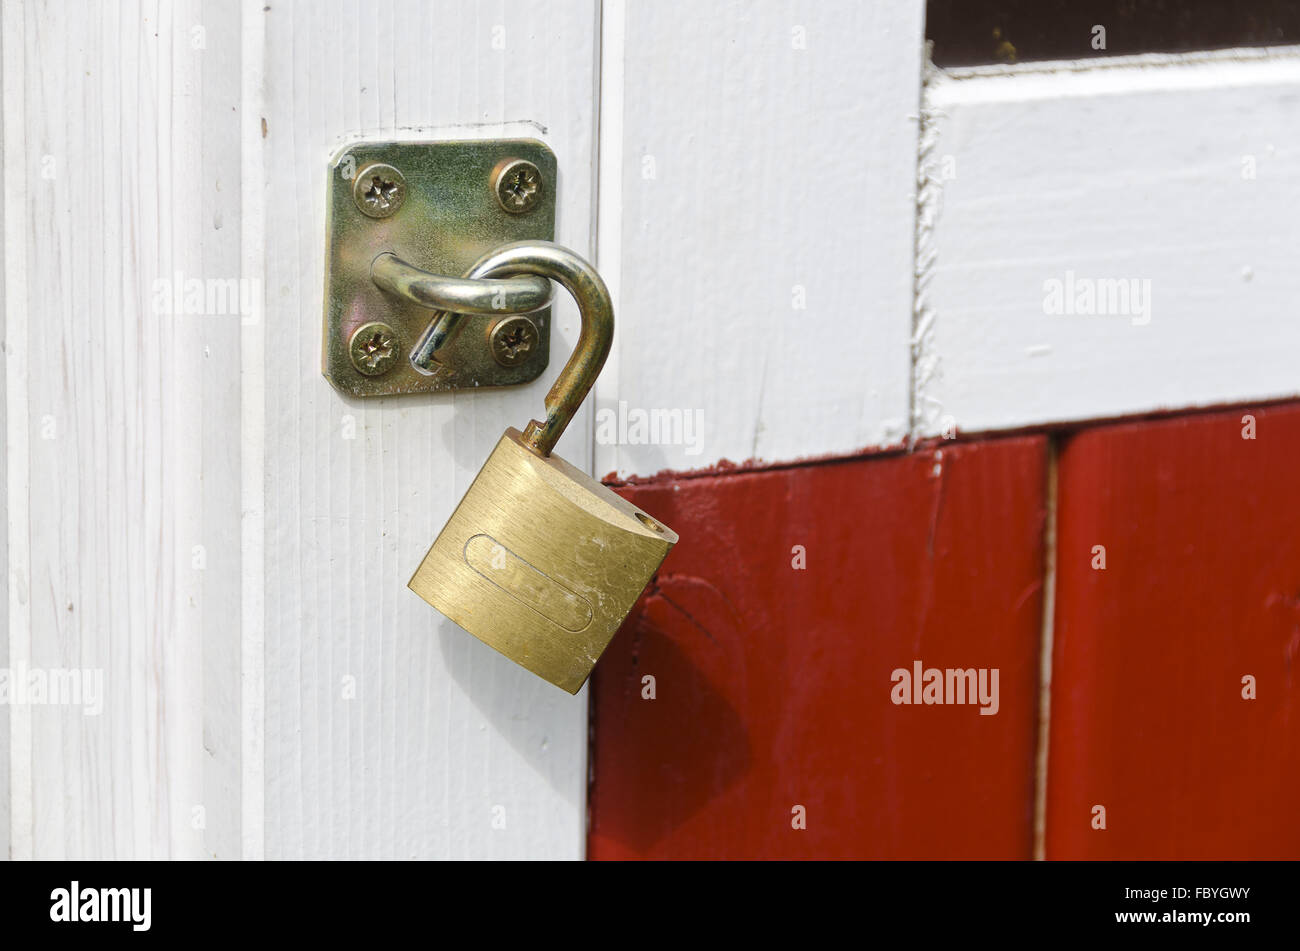 padlock at a wooden door Stock Photo